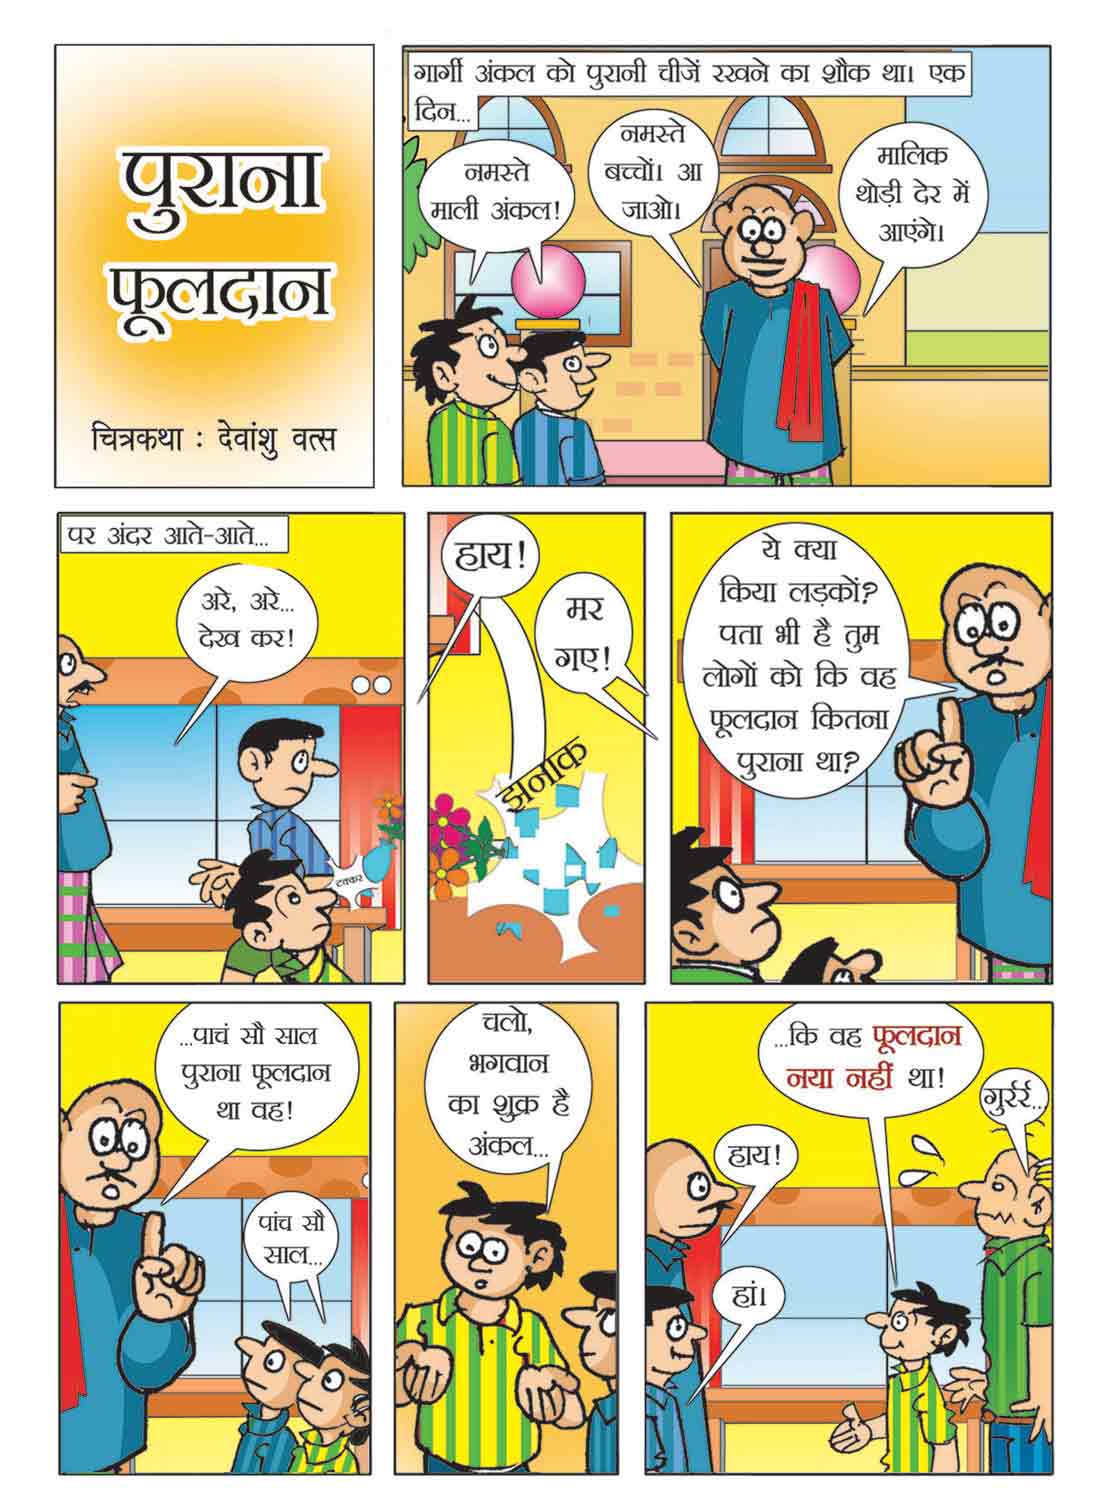 Hindi Cartoon Chitra For Kids Free Download | सच्ची शिक्षा